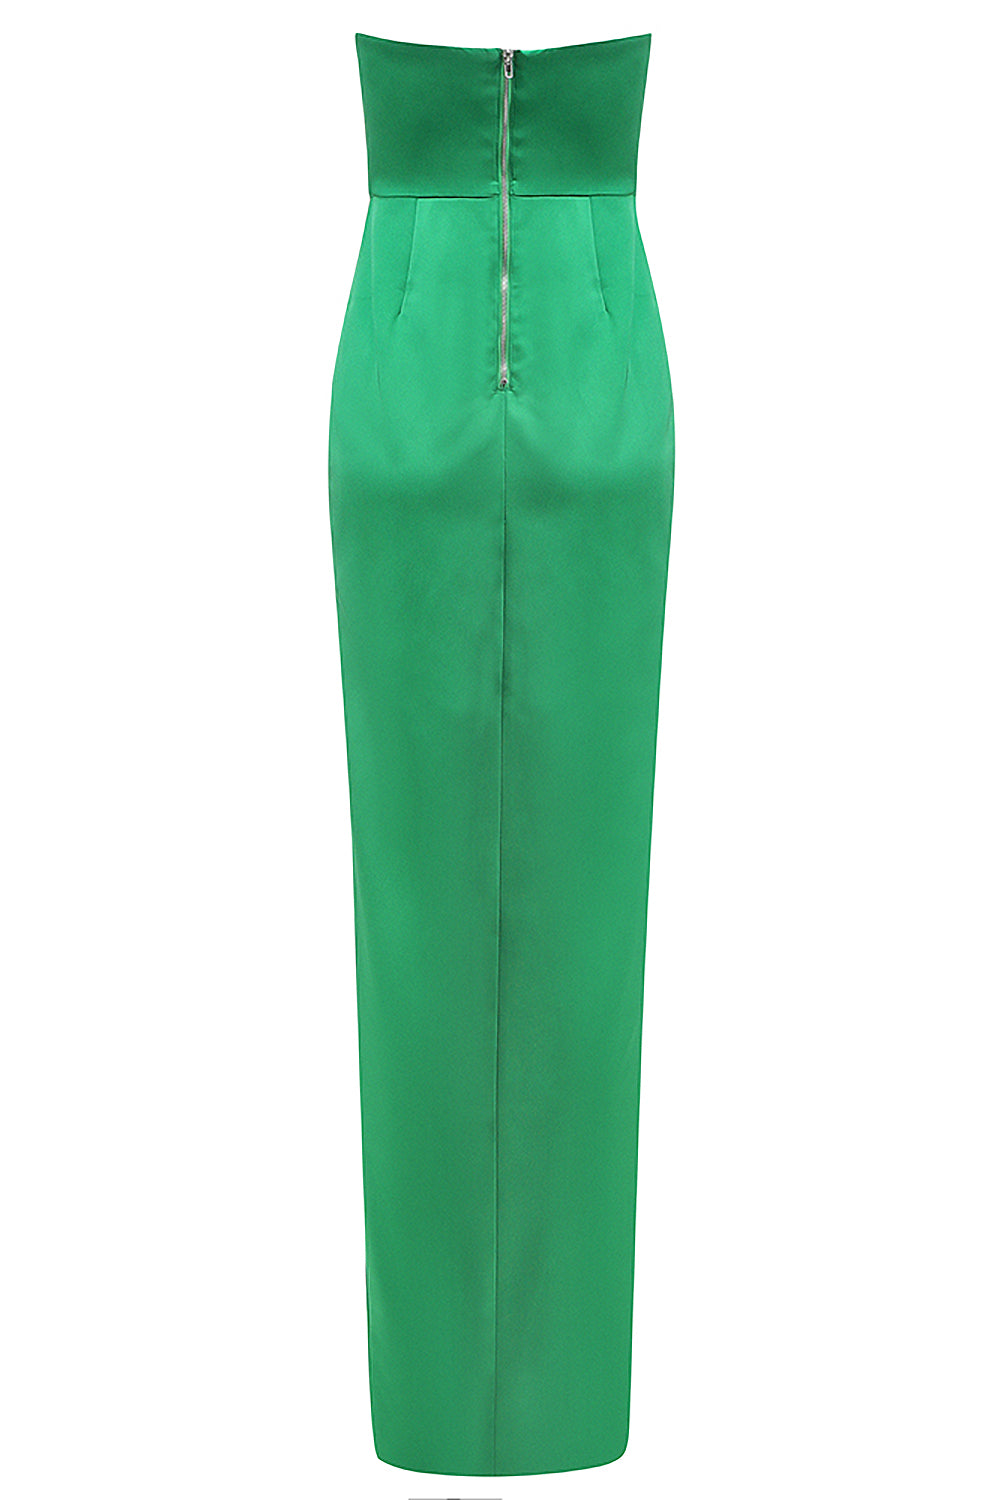 Green Strapless Floor-Length Split Maxi Dress - IULOVER